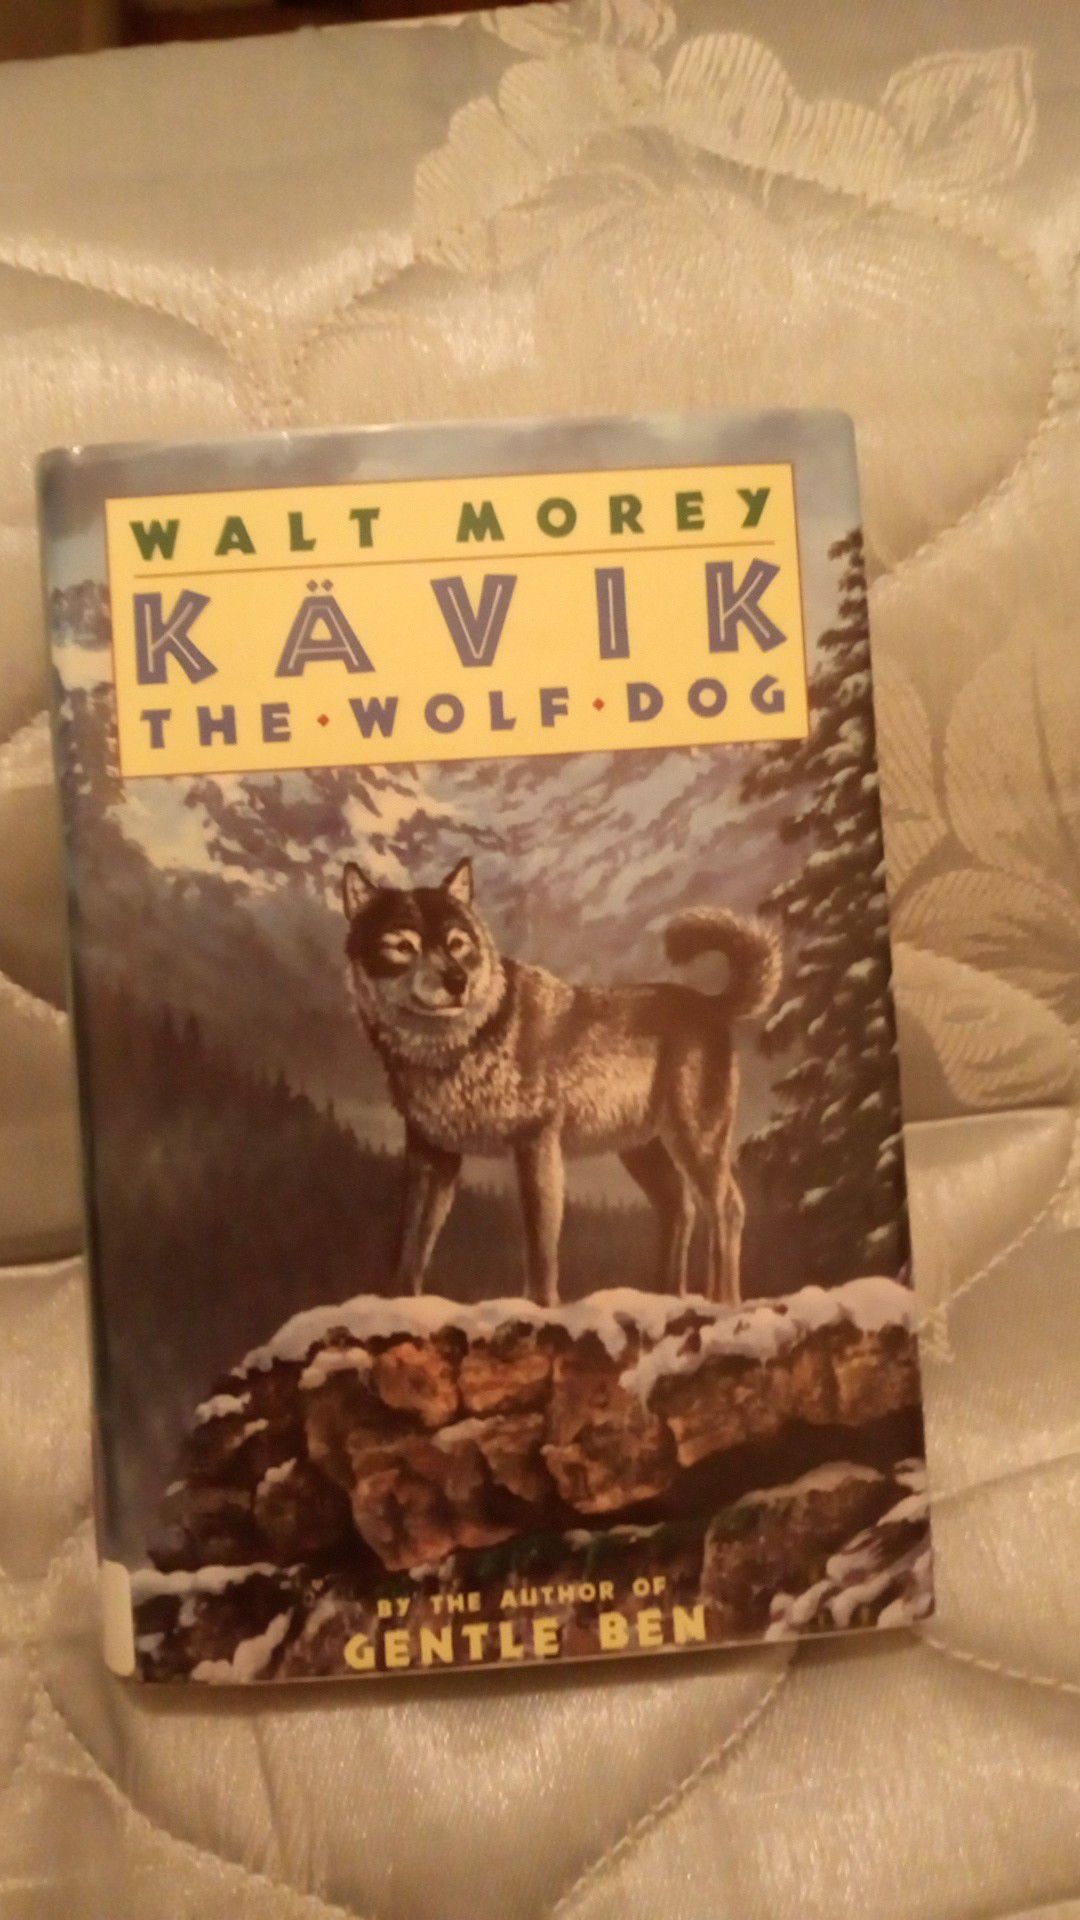 Kavik the wolf dog